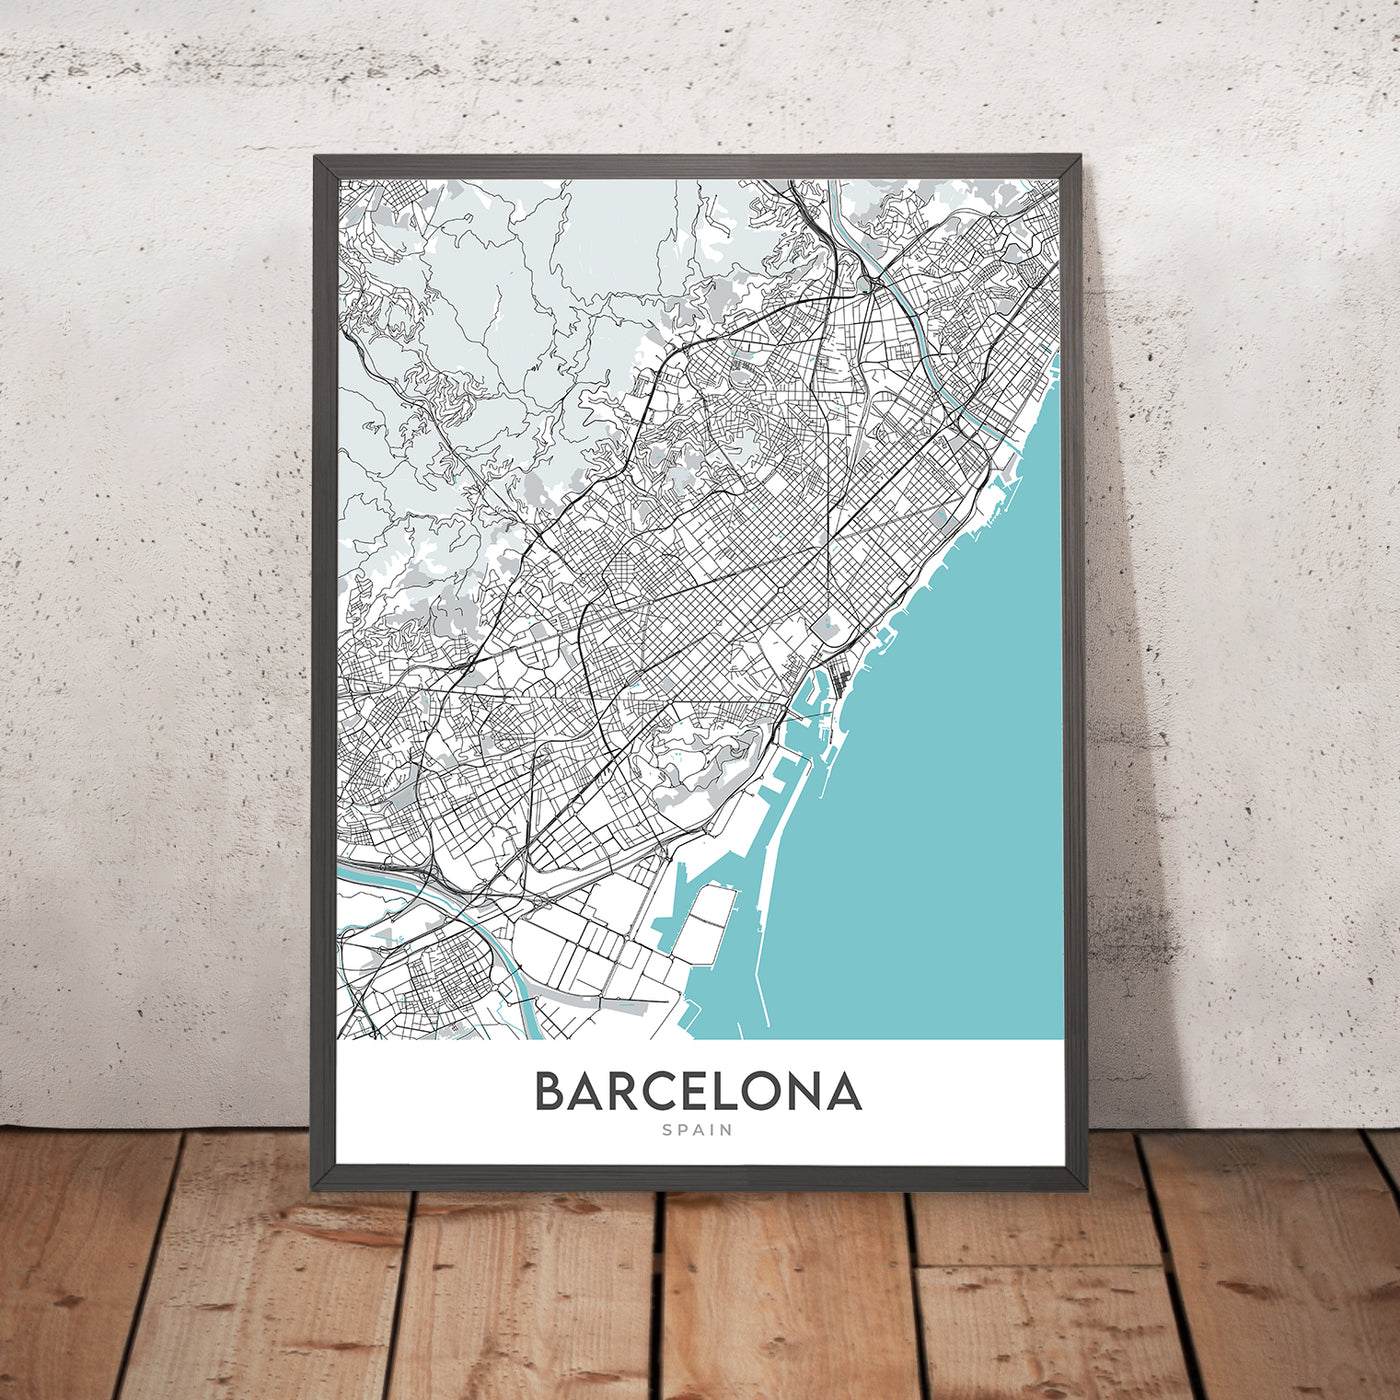 Modern City Map of Barcelona, Spain: Gothic Quarter, El Born, Gracia, Sagrada Familia, Casa Batlló